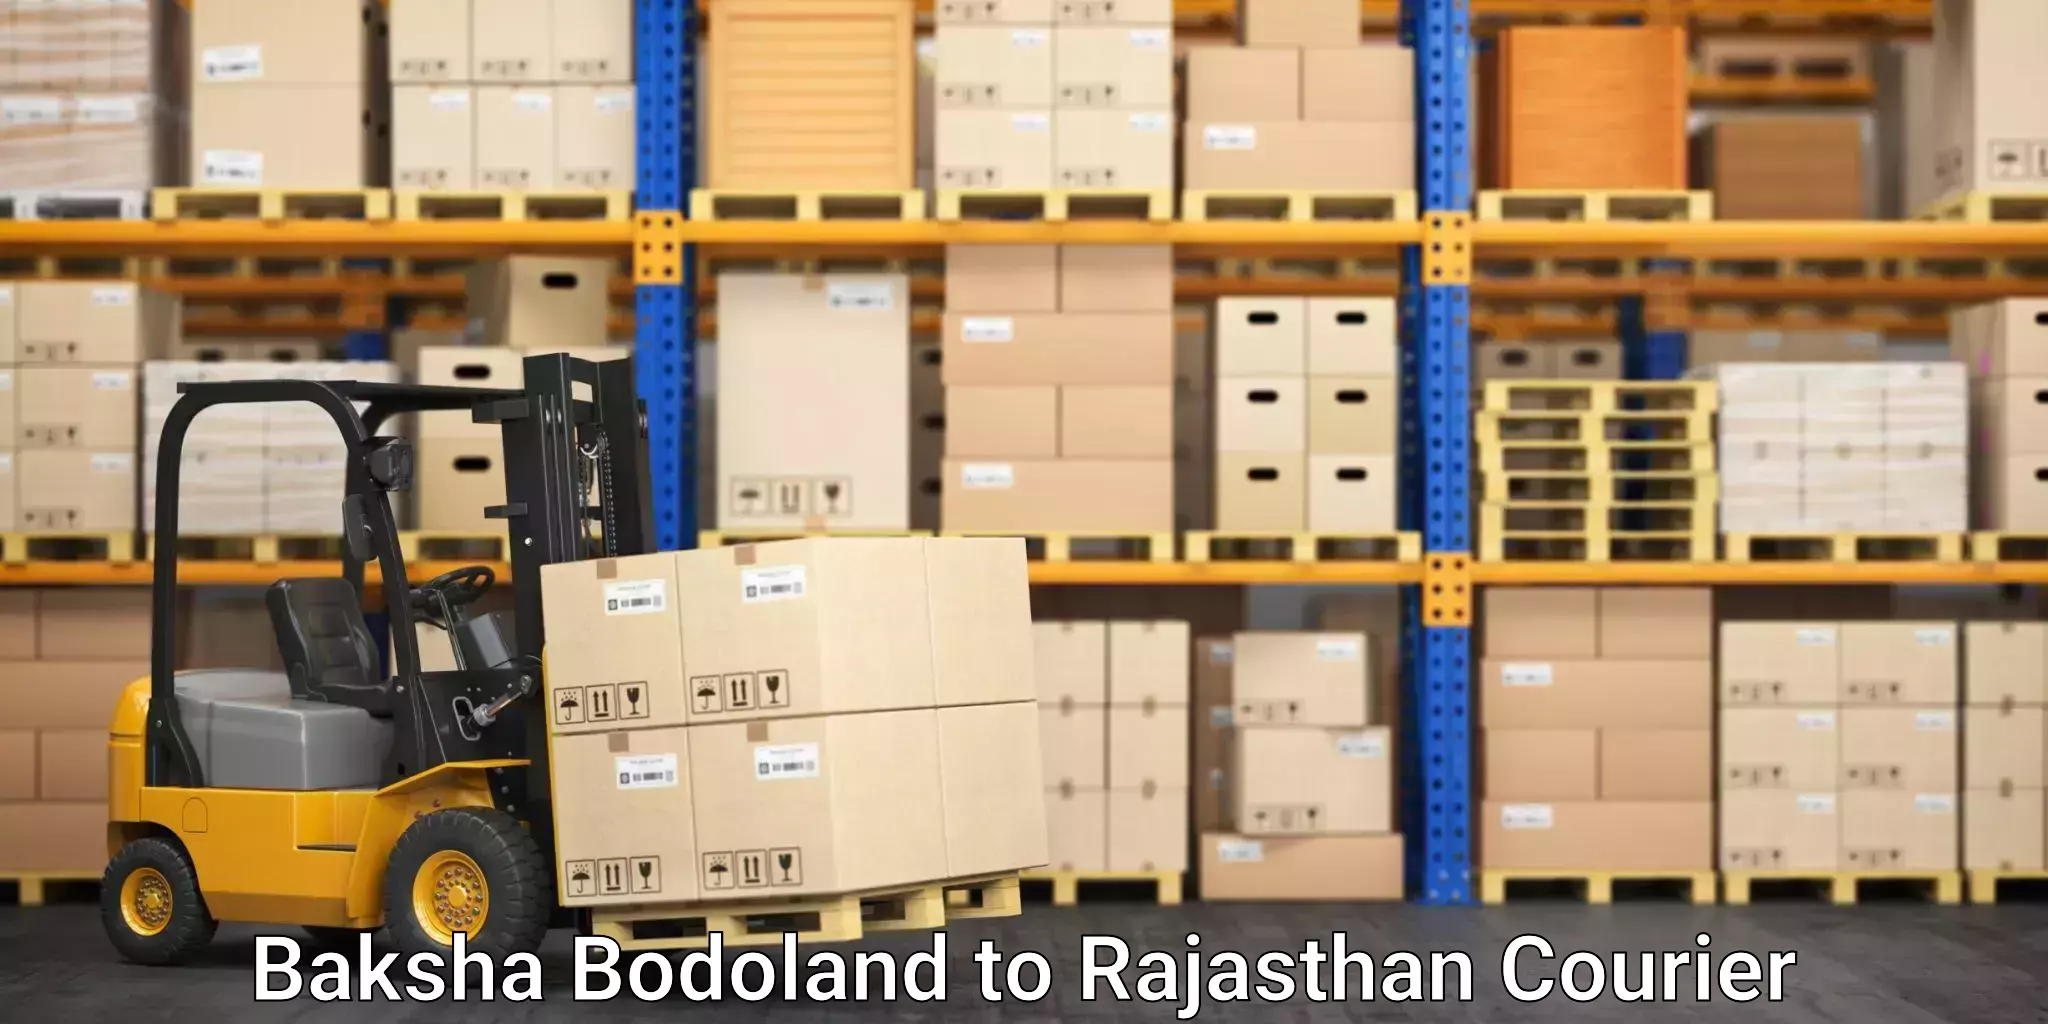 Rural area delivery in Baksha Bodoland to Rajasthan